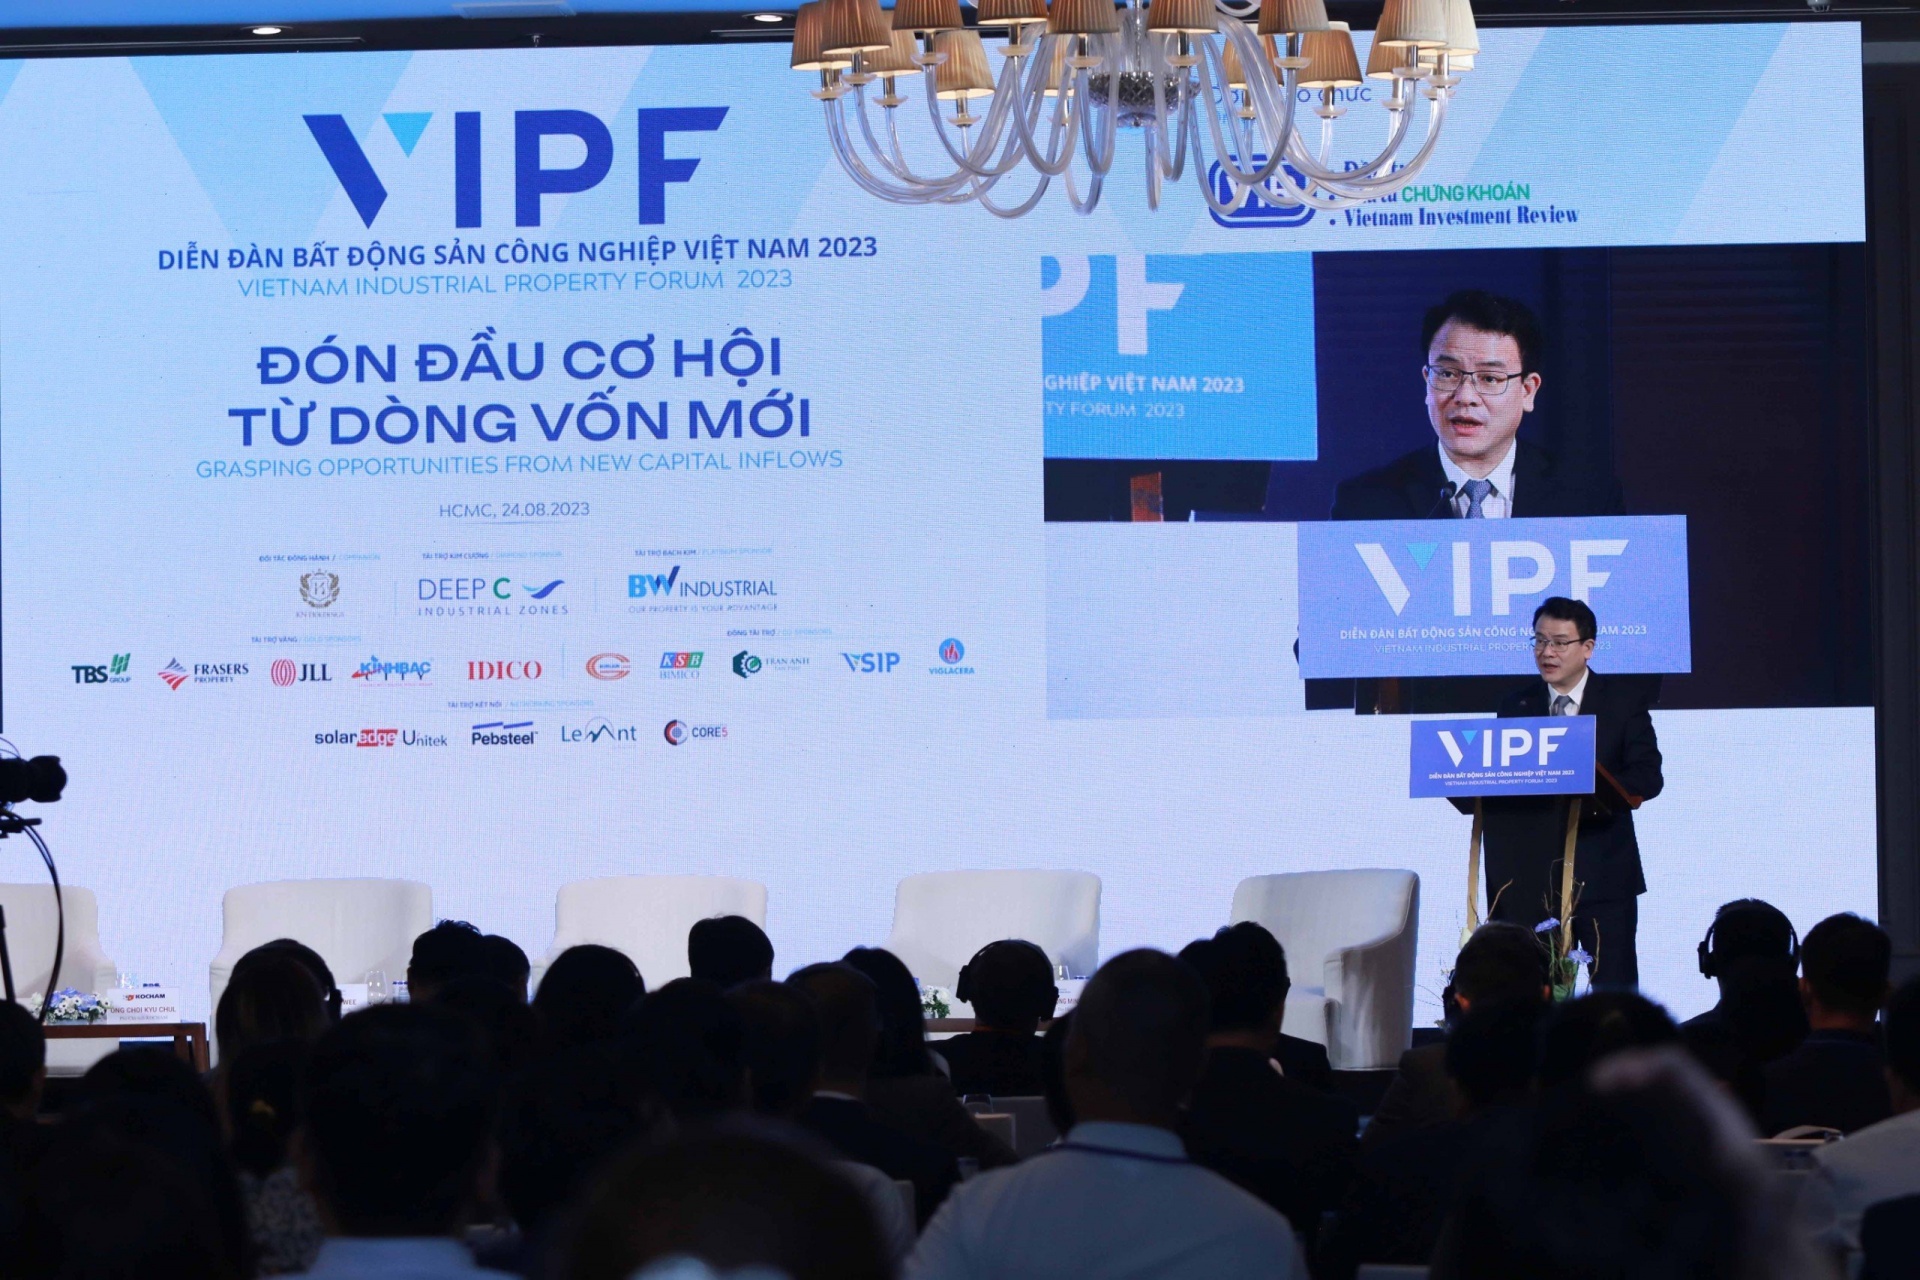 Vietnam Industrial Property Forum 2023 is underway